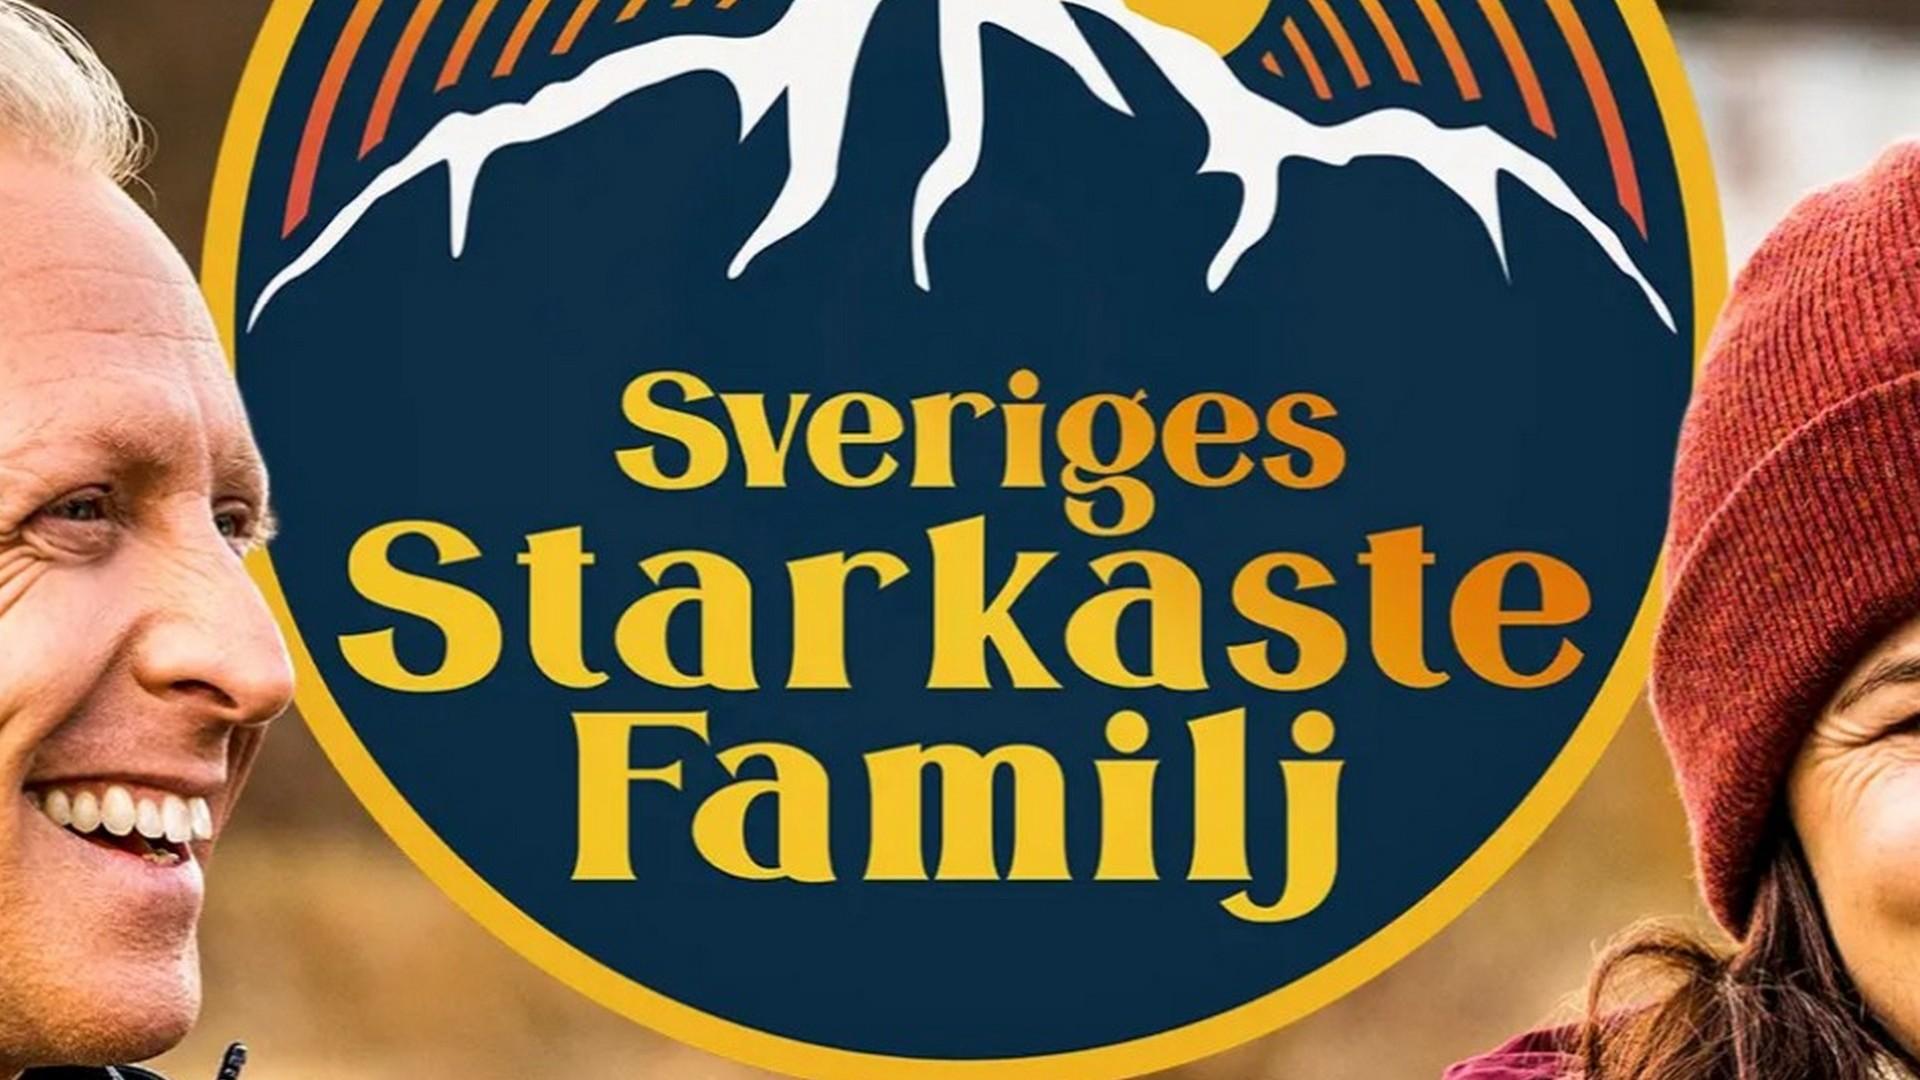 Sweden's Strongest Family